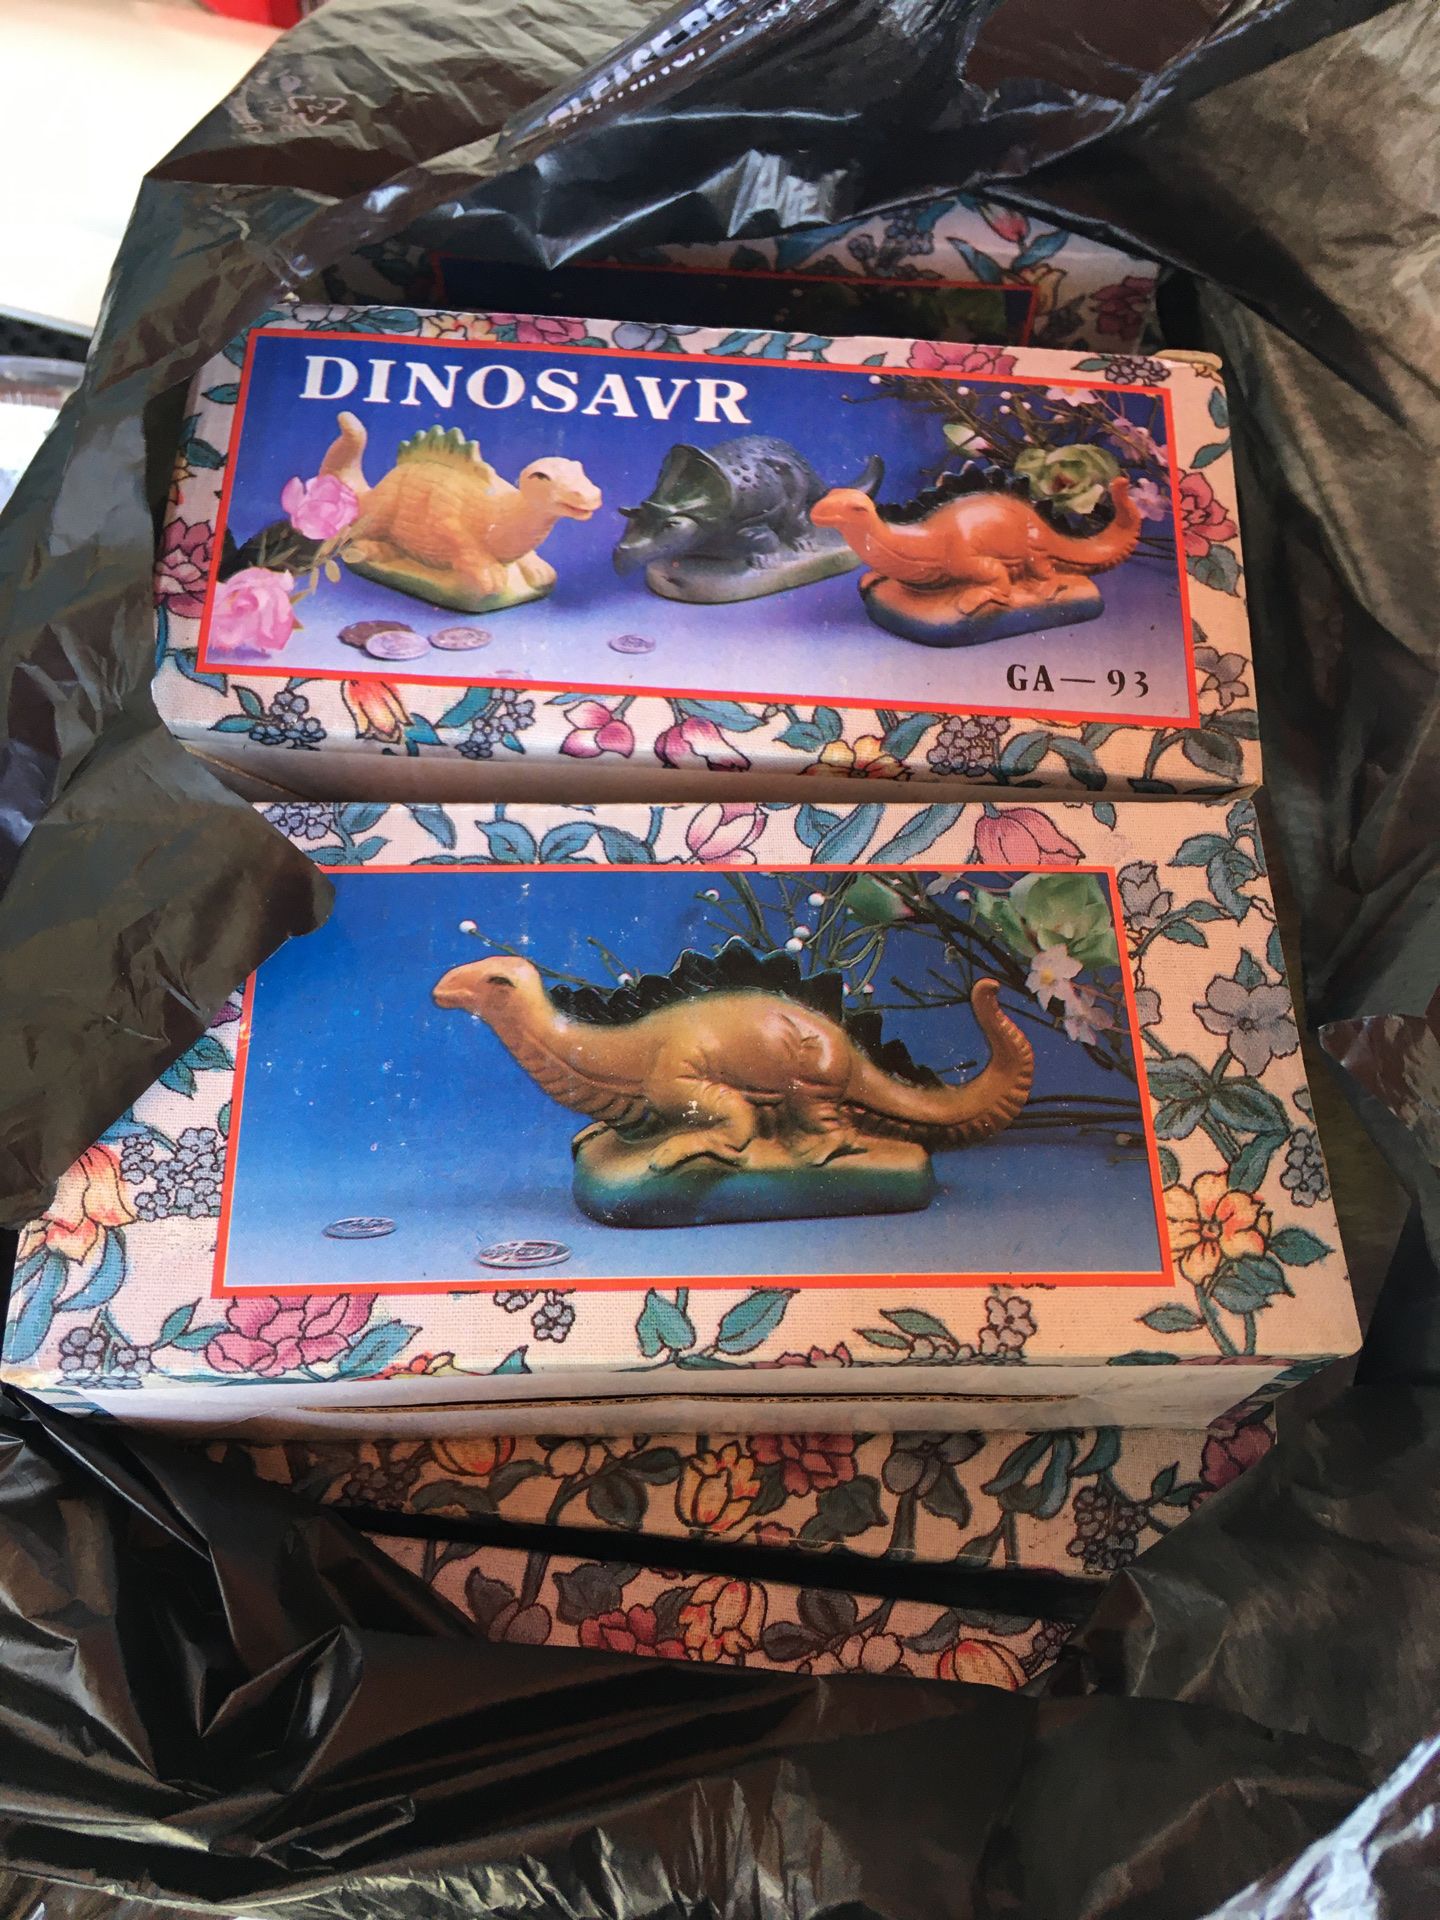 Ceramic dinosaur decorations